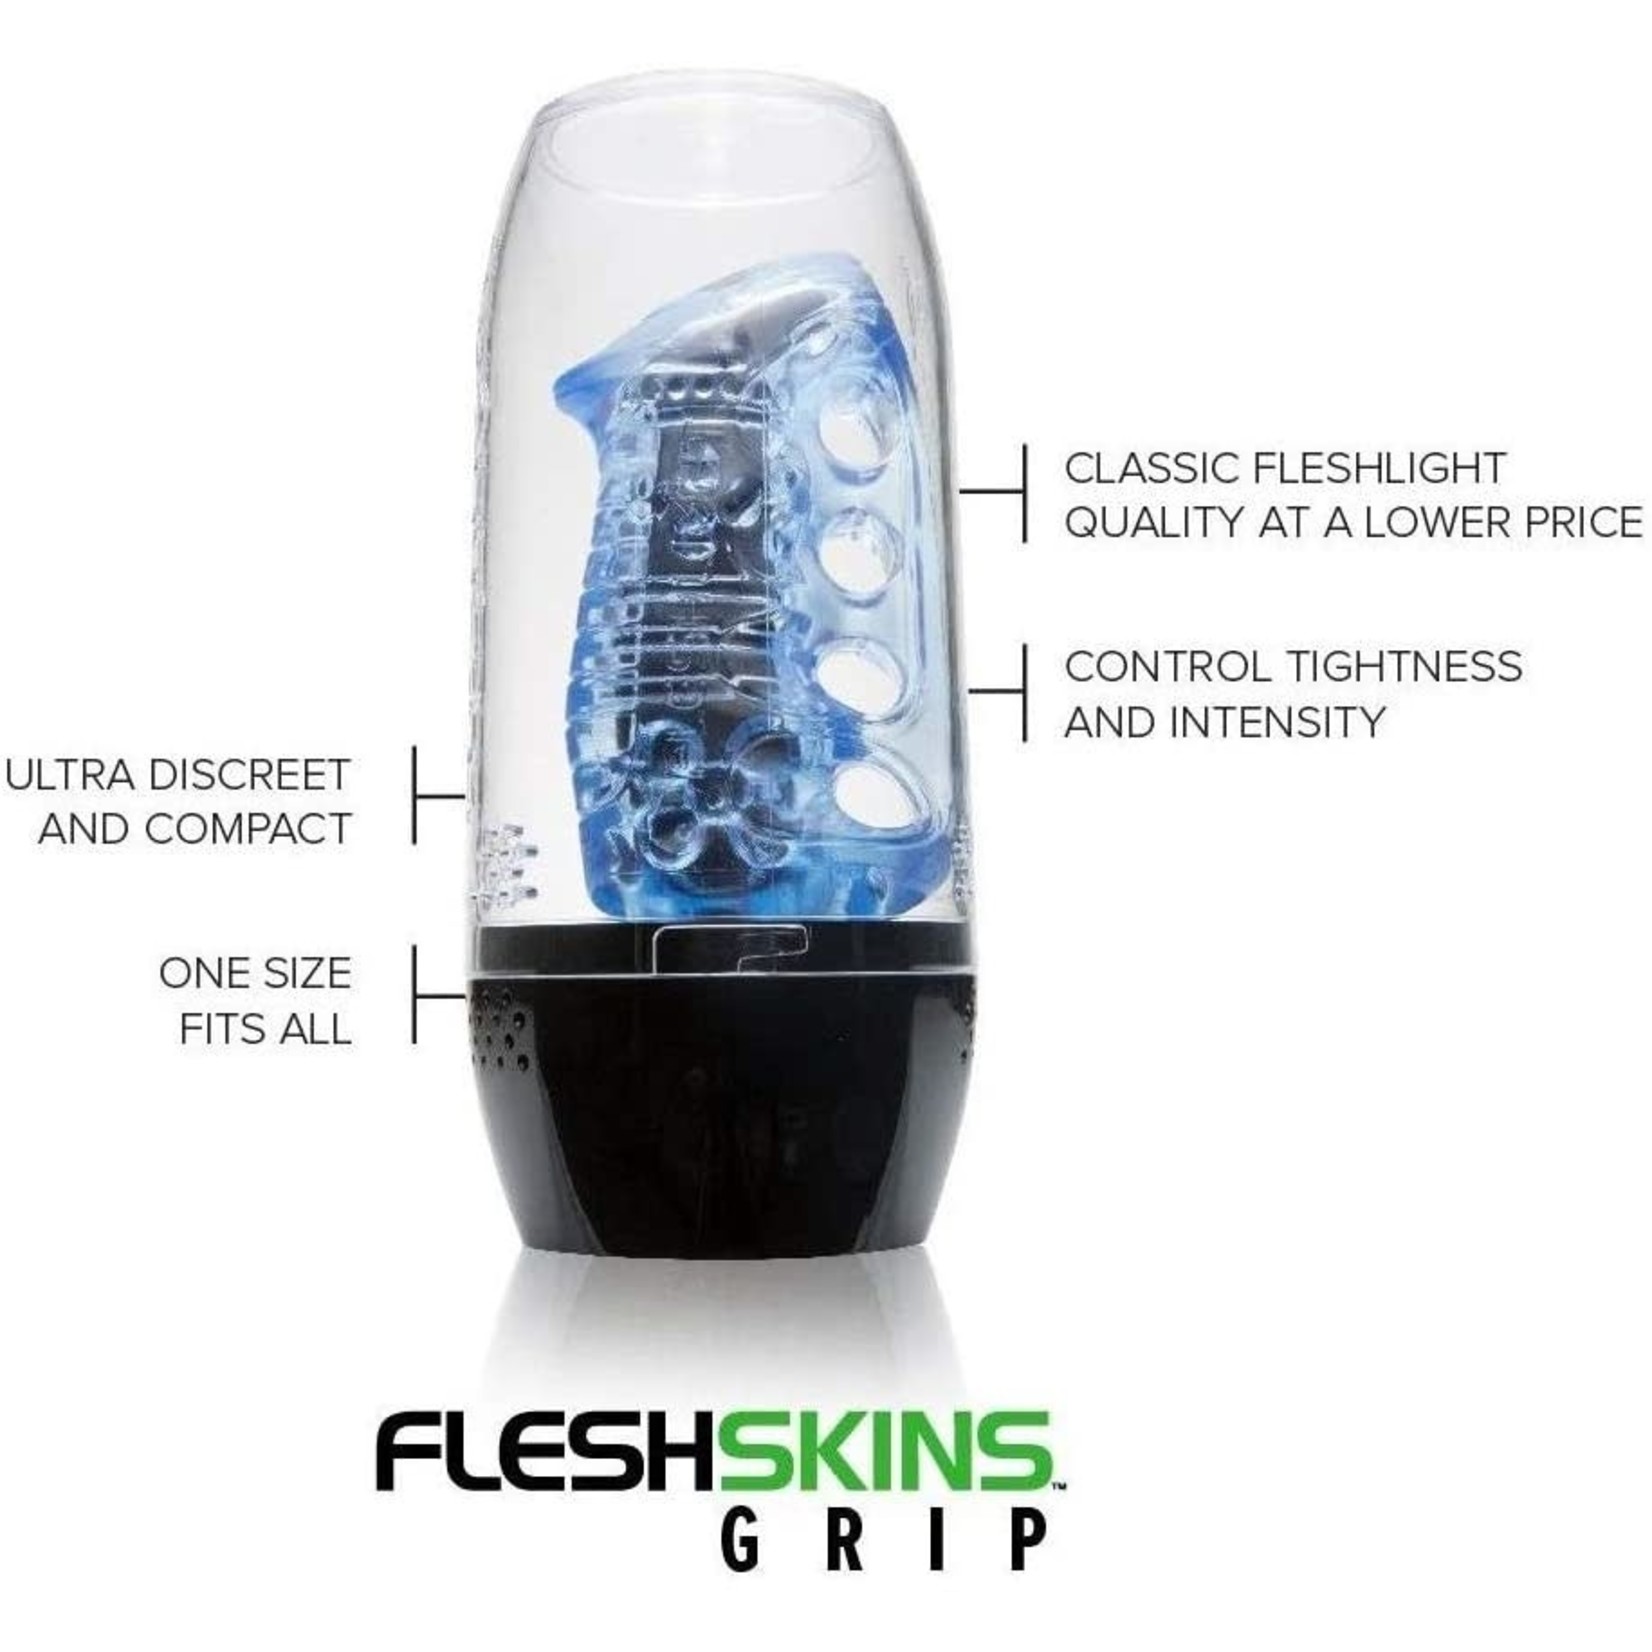 FLESH-LIGHT FLESHLIGHT - FLESHSKINS GRIP - BLUE ICE